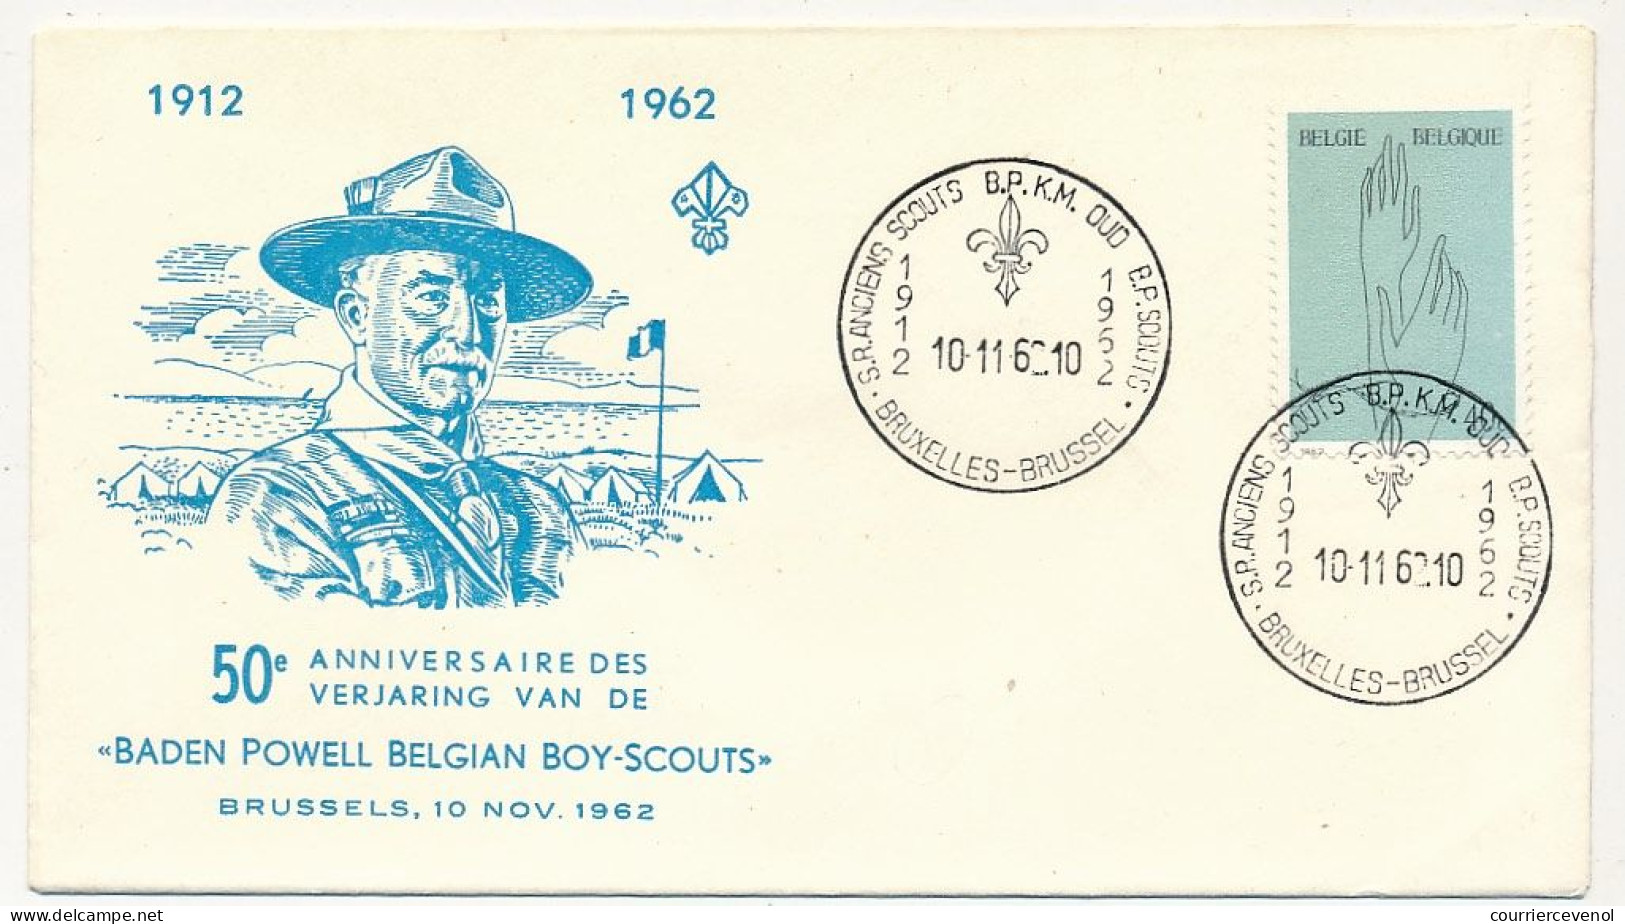 BELGIQUE - Env. FDC 50eme Anniversaire Baden Powell Belgian Boy-Scouts - 10/11/1962 - Lettres & Documents